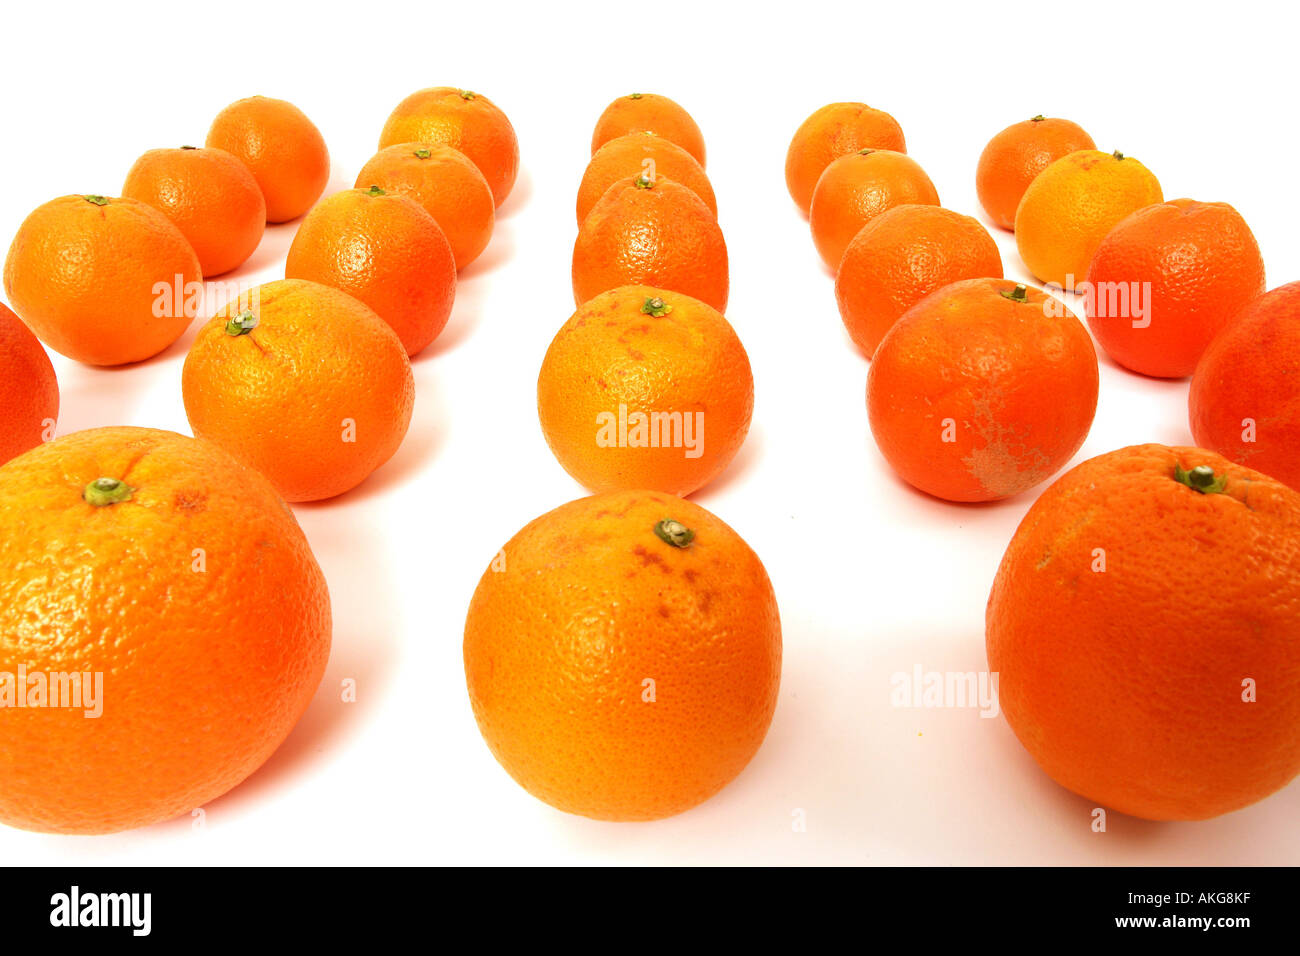 Les oranges disposées sur un fond blanc symbolisant l'équipe leadership Banque D'Images